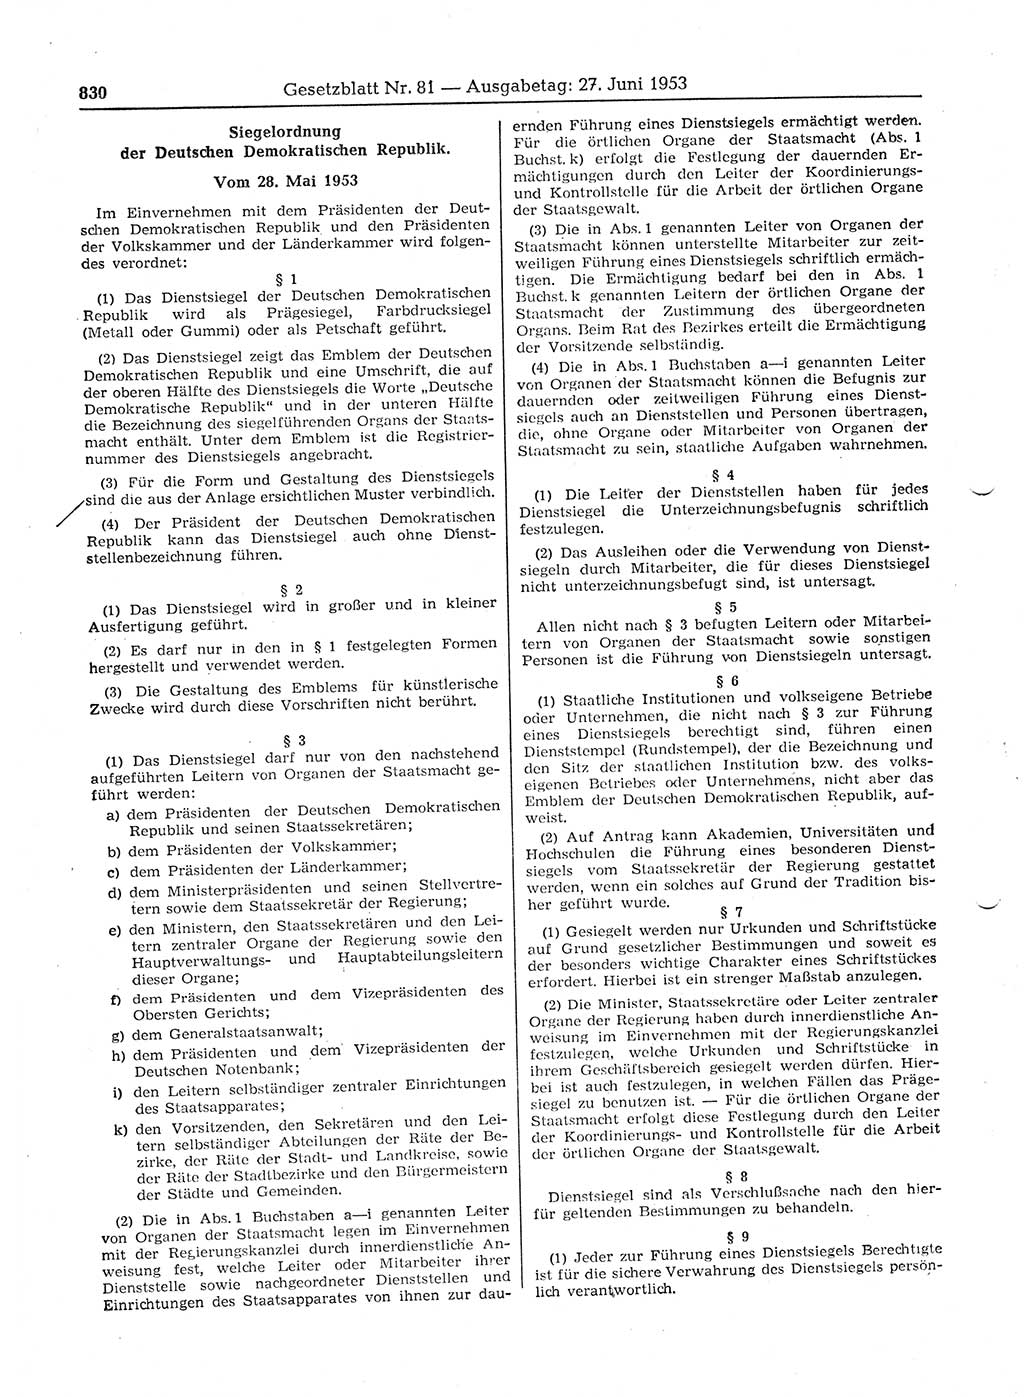 Gesetzblatt (GBl.) der Deutschen Demokratischen Republik (DDR) 1953, Seite 830 (GBl. DDR 1953, S. 830)